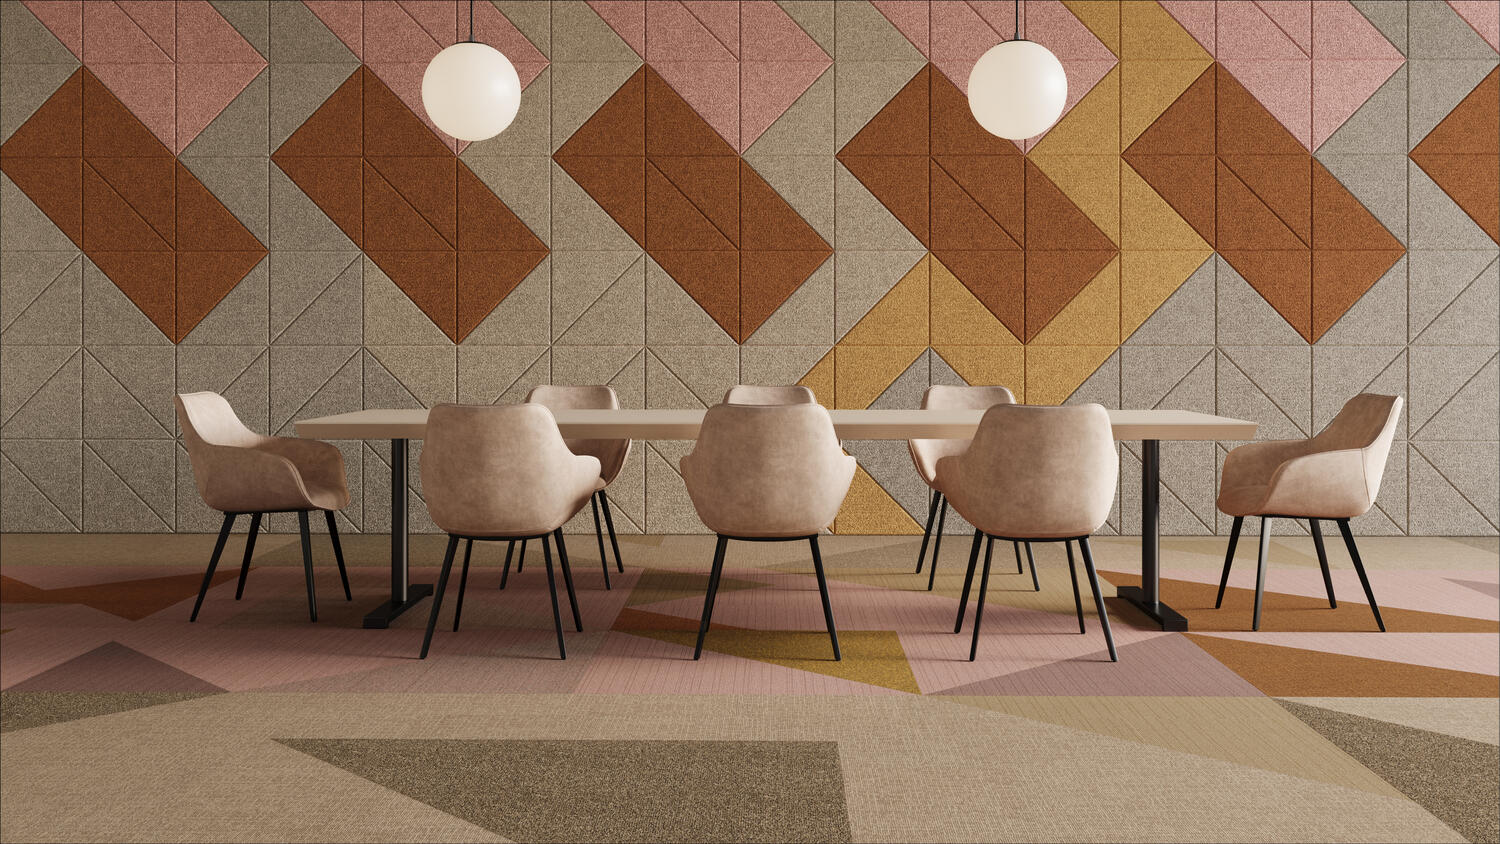 Harmoničan prostor sa odgovarajućom paletom boja uređen koristeći Tarkett podove i Baux akustične zidove